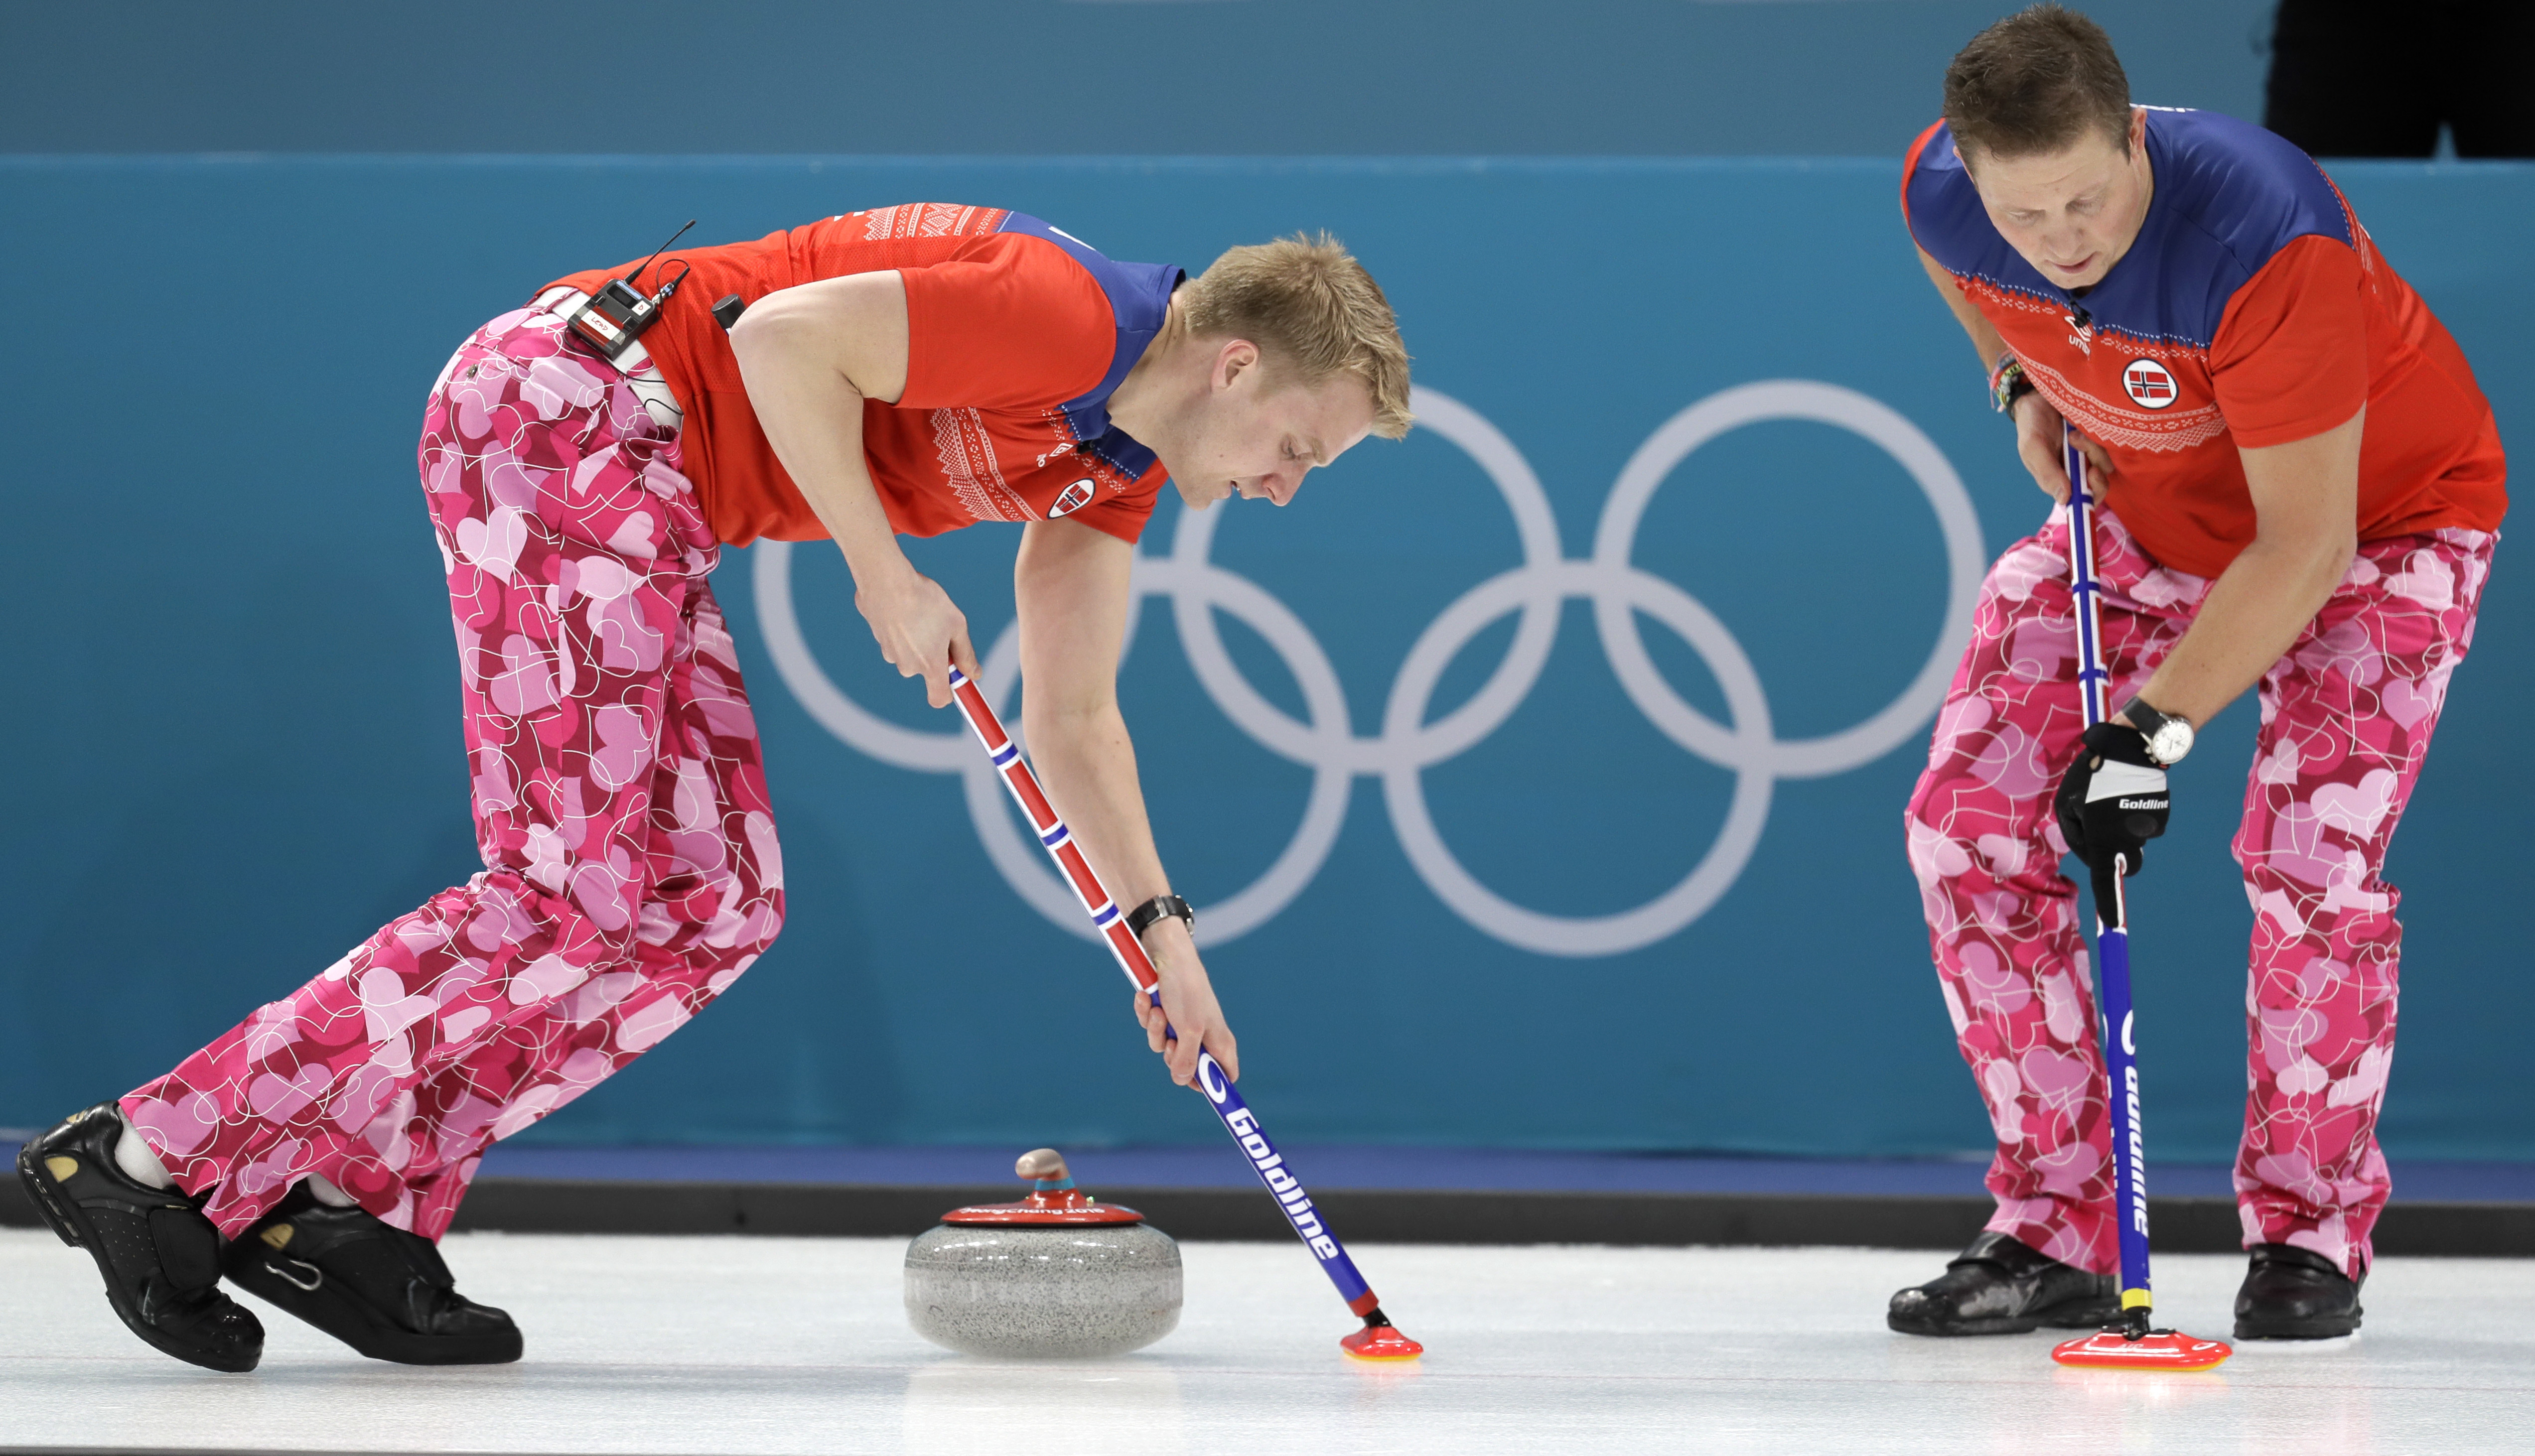 Equipo de curling presume uniforme de Día de San Valentín